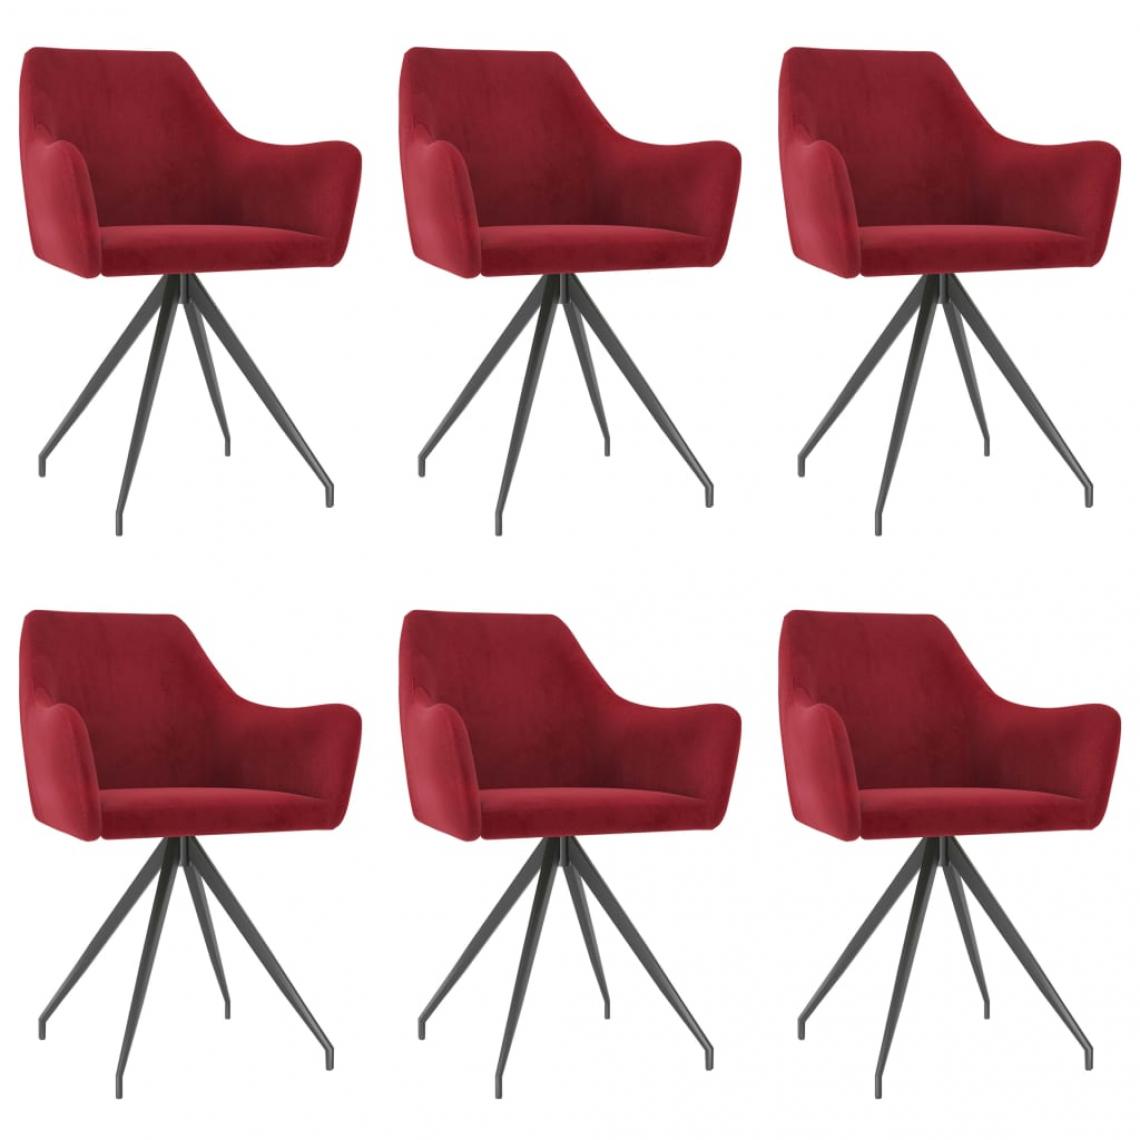 Decoshop26 - Lot de 6 chaises de salle à manger cuisine design moderne velours rouge bordeaux CDS022827 - Chaises